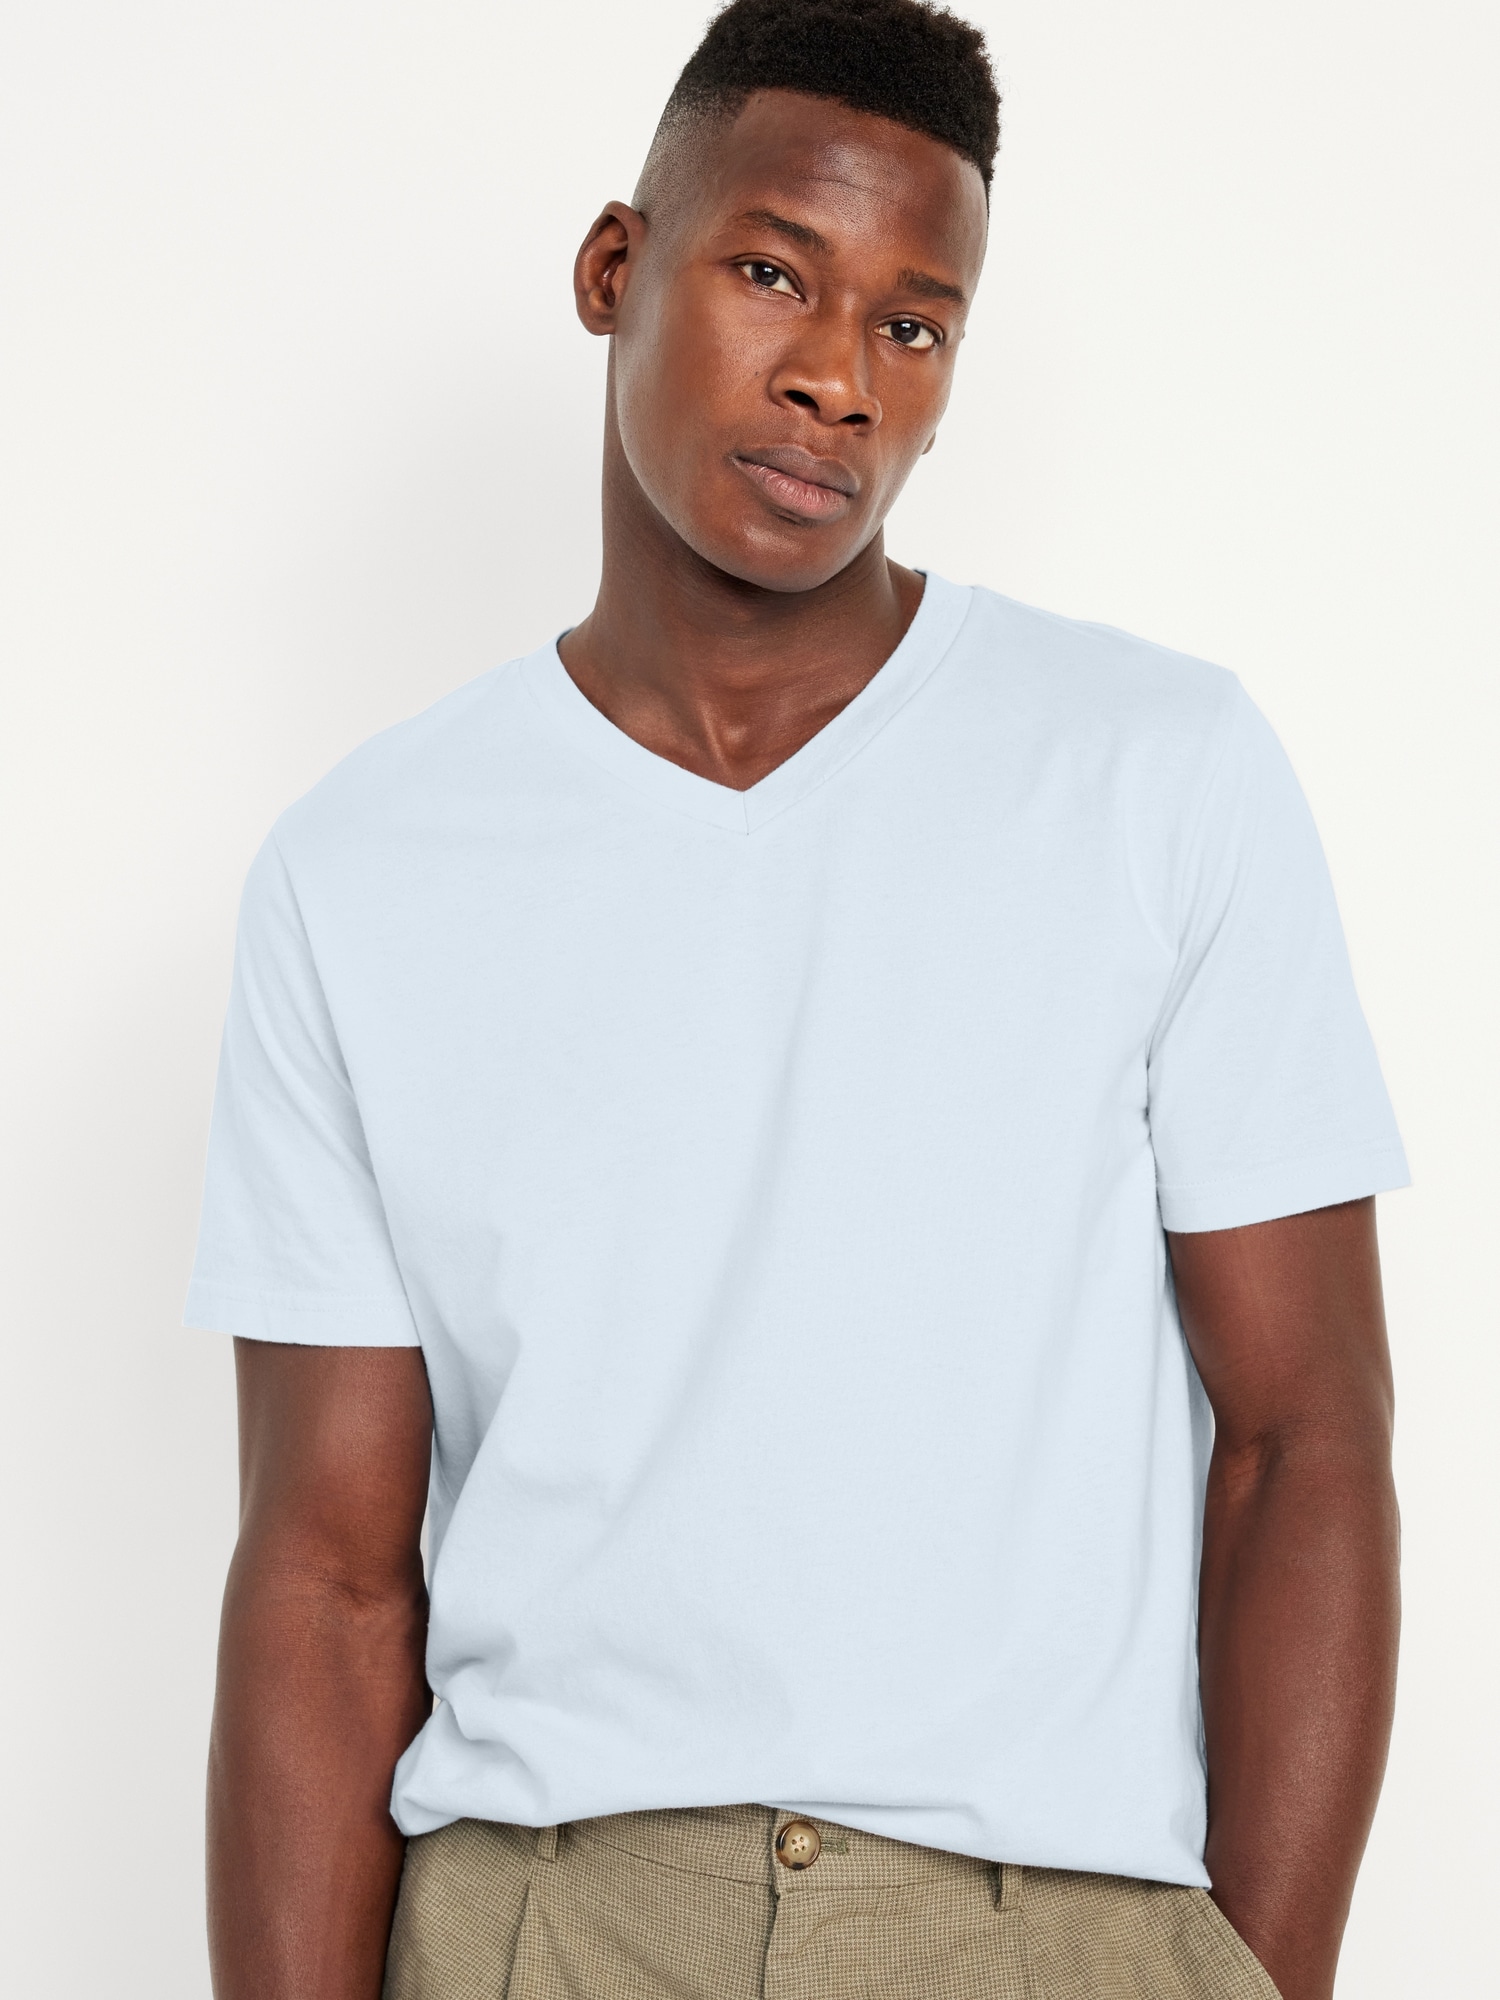 Regular Fit V-neck T-shirt - White - Men